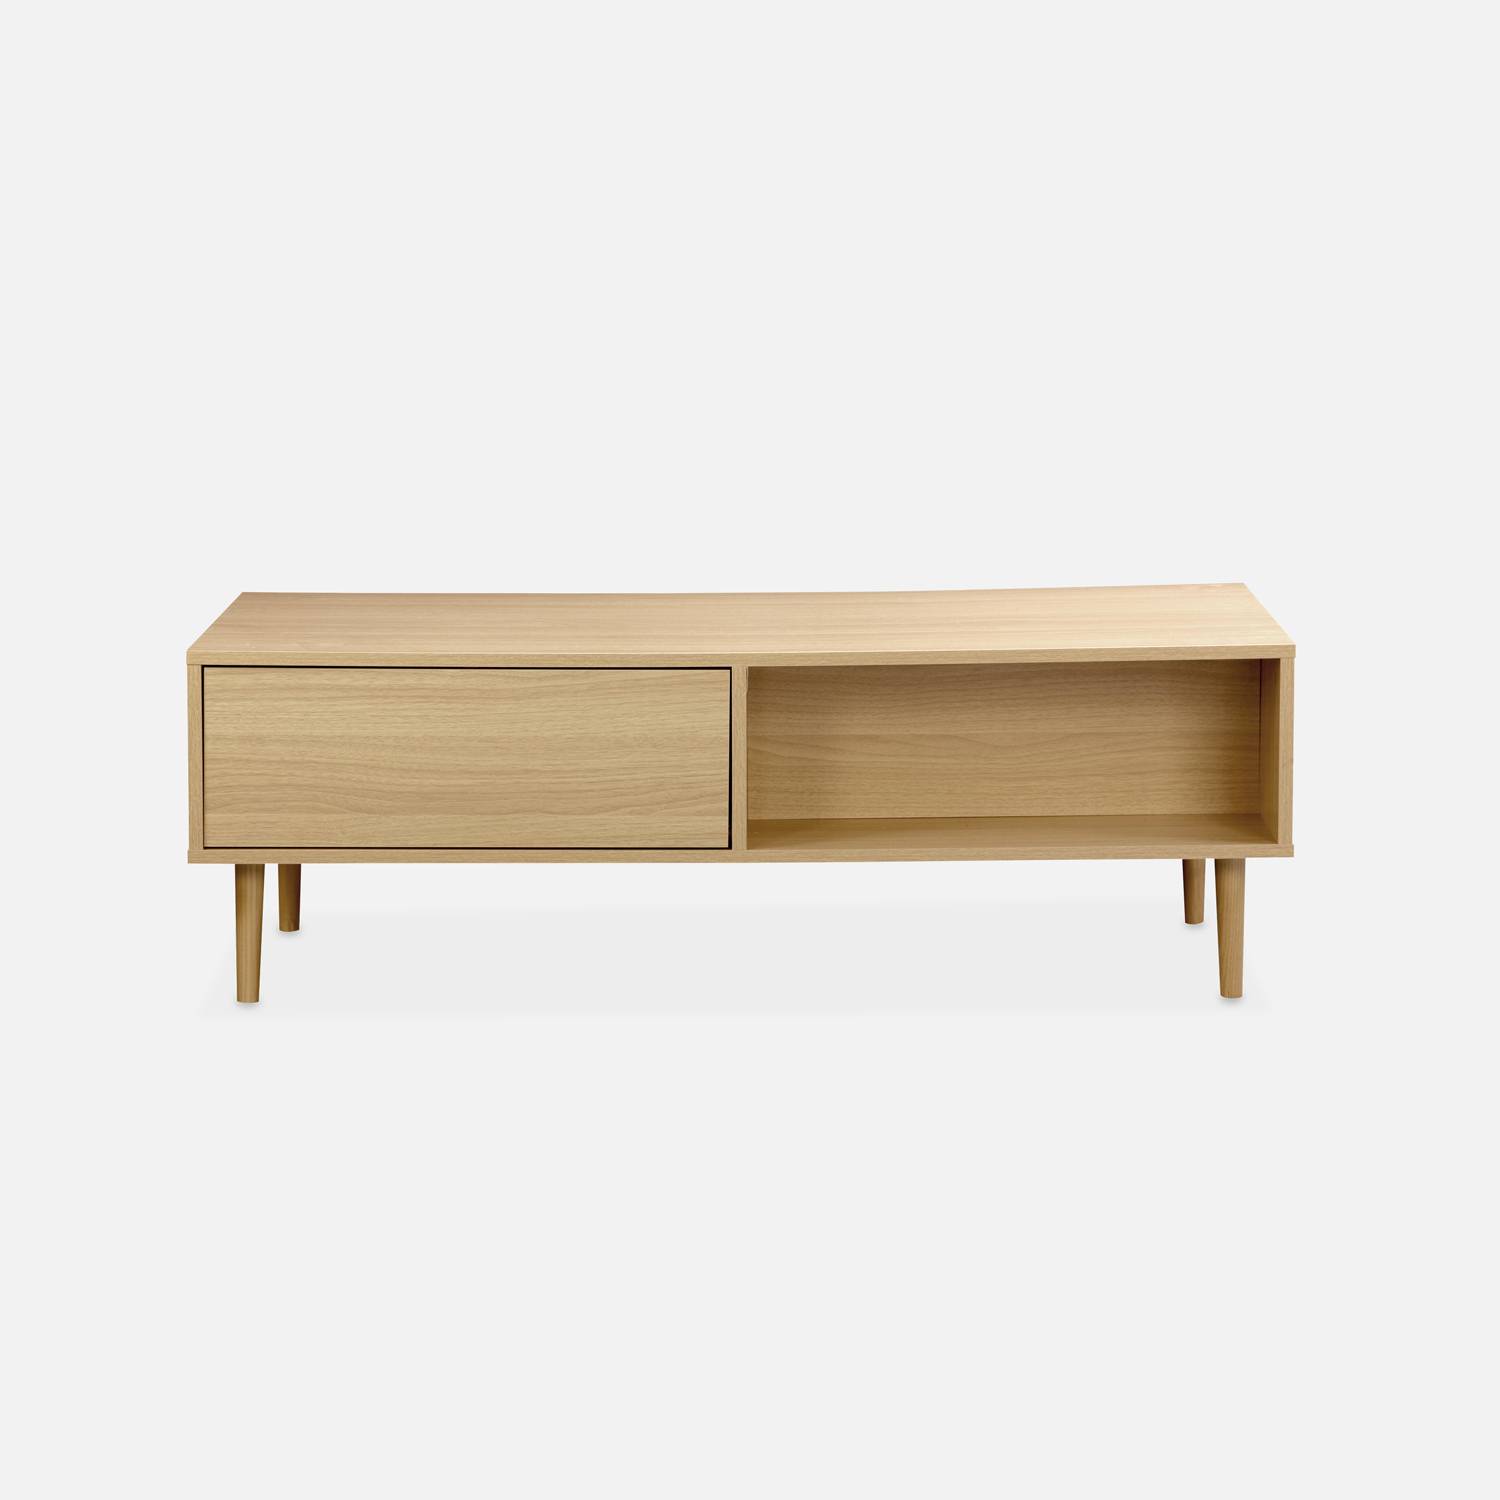 Table basse en décor bois - Mika - 2 tiroirs, 2 espaces de rangement, L 120 x l 55 x H 40cm,sweeek,Photo5